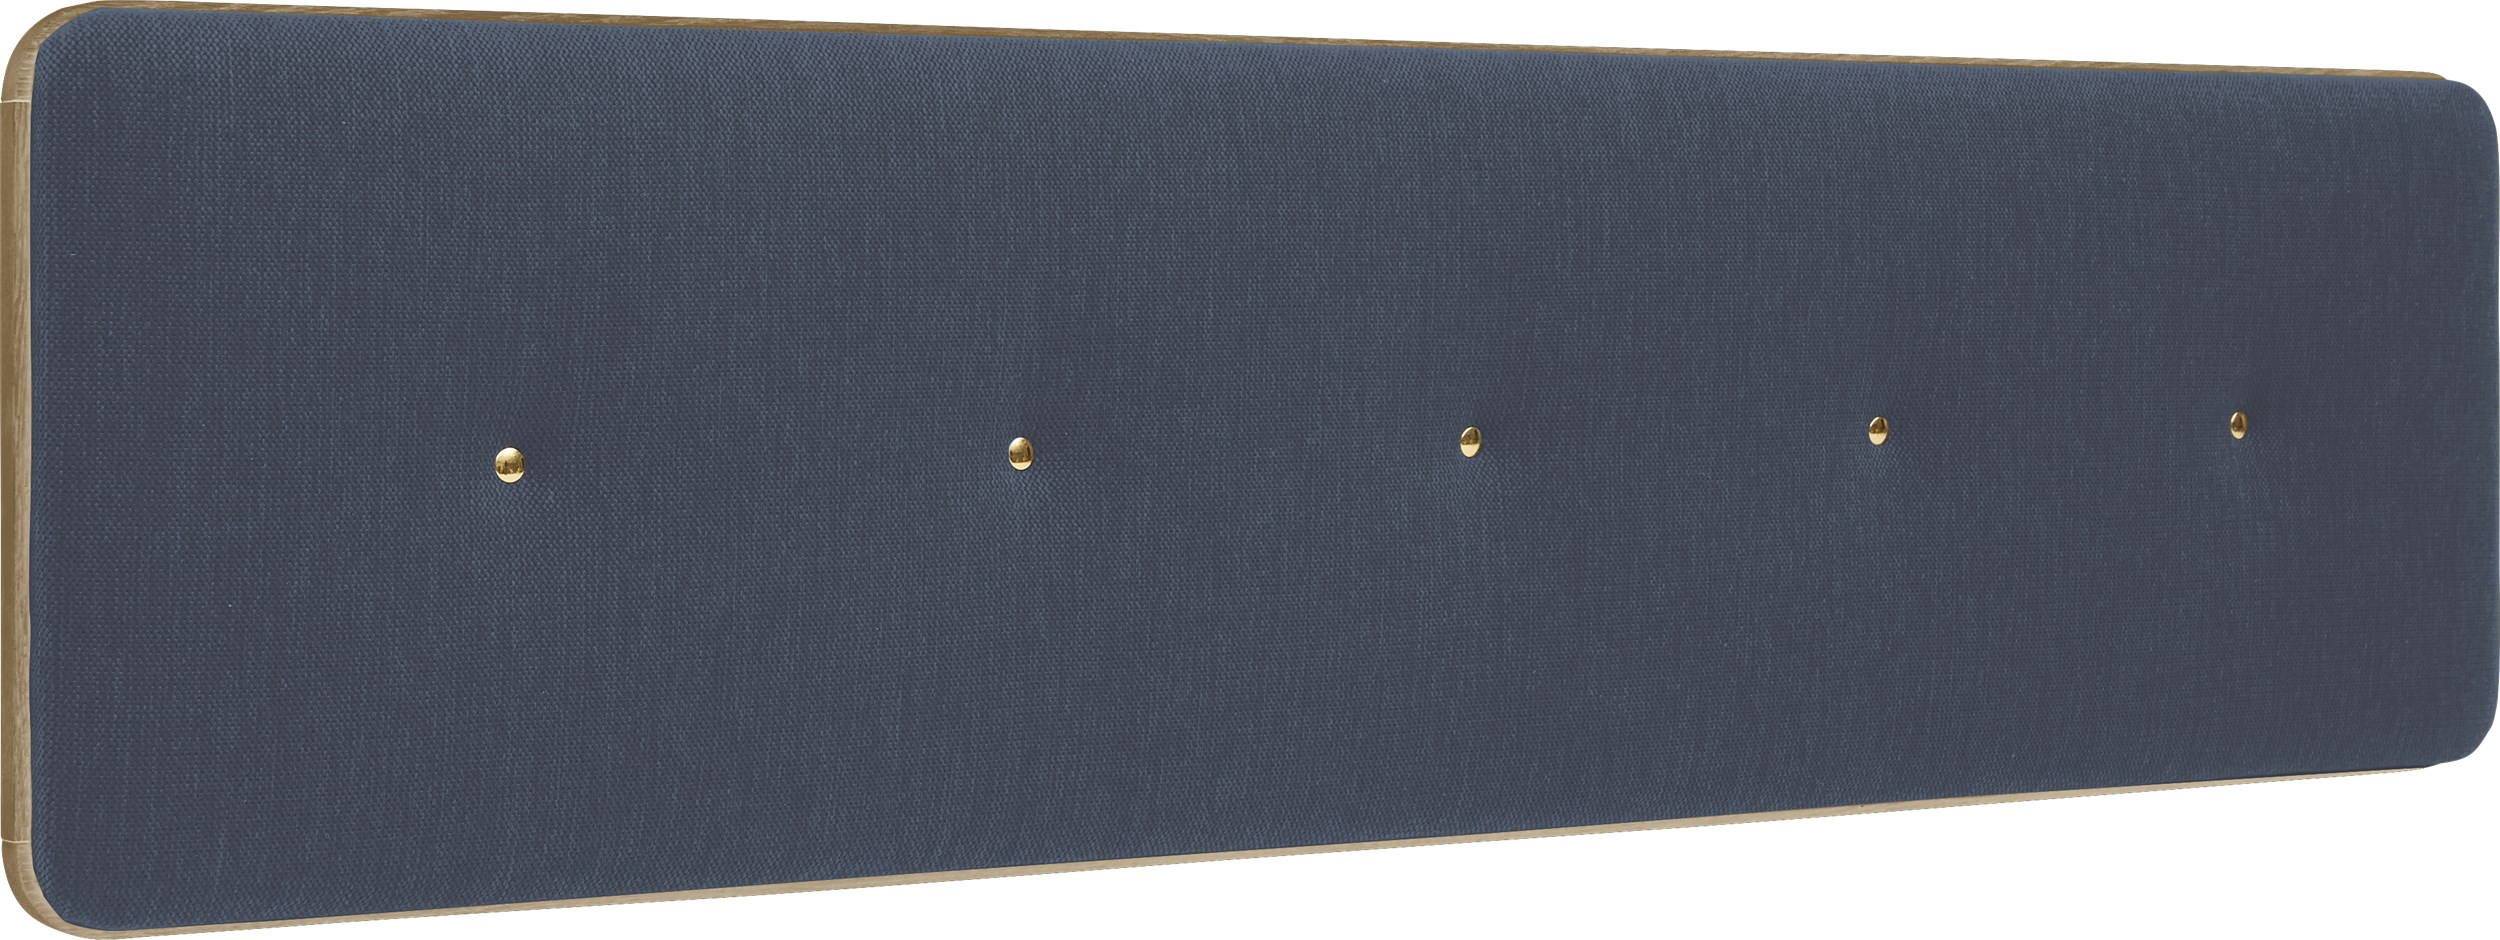 Match Small Sänggavel 180 x 45 x 6 cm - Blue och ram i mattlackerat ekfaner